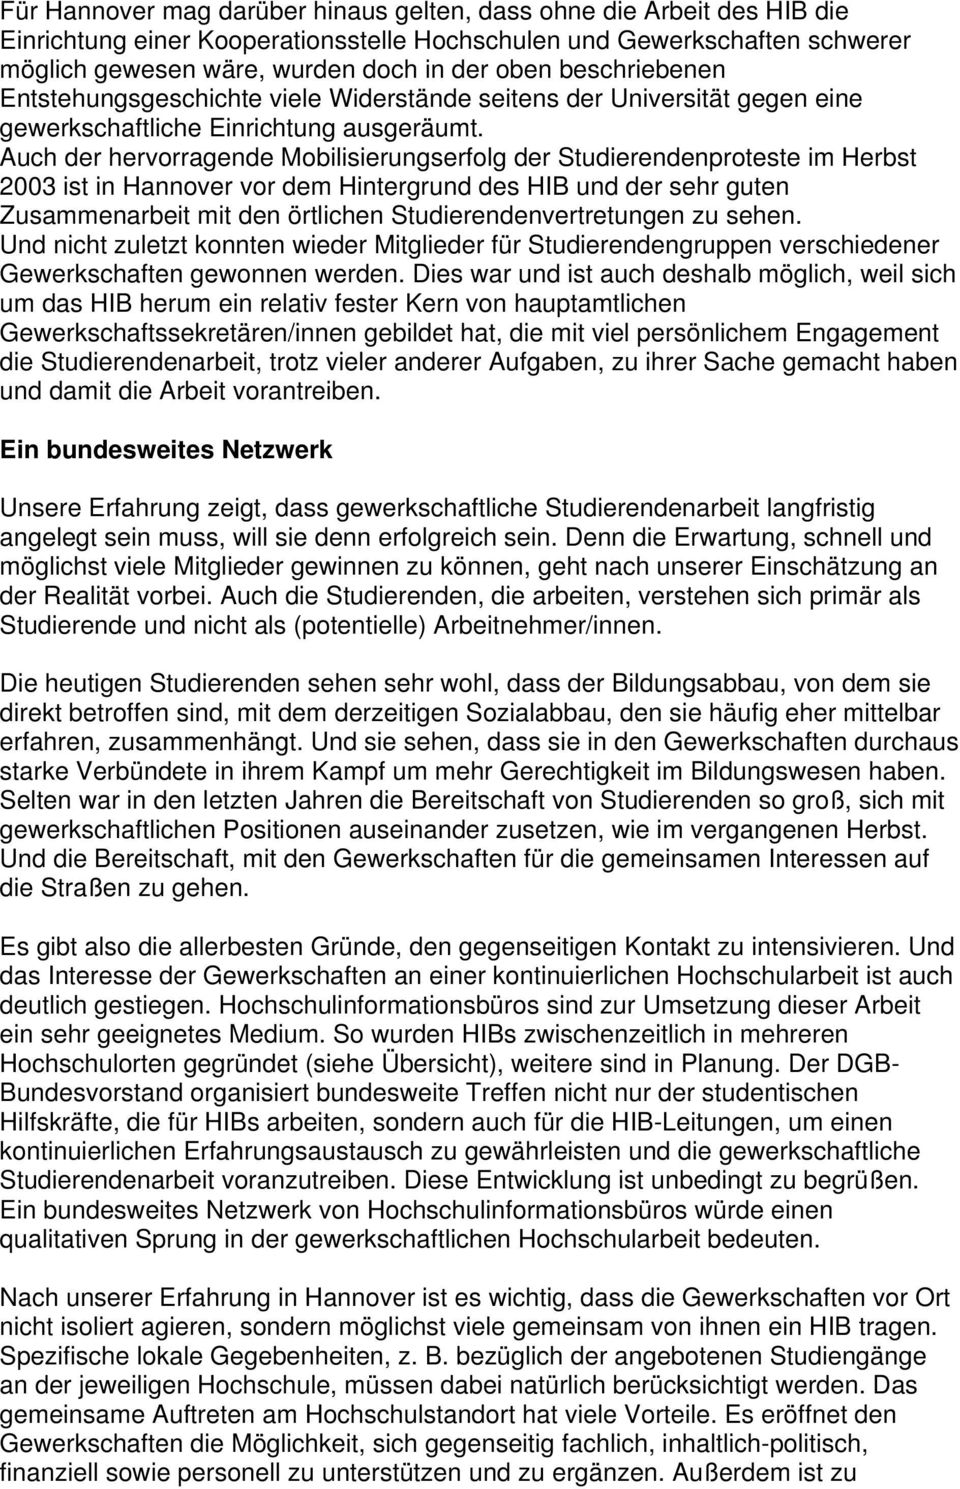 Auch der hervorragende Mobilisierungserfolg der Studierendenproteste im Herbst 2003 ist in Hannover vor dem Hintergrund des HIB und der sehr guten Zusammenarbeit mit den örtlichen